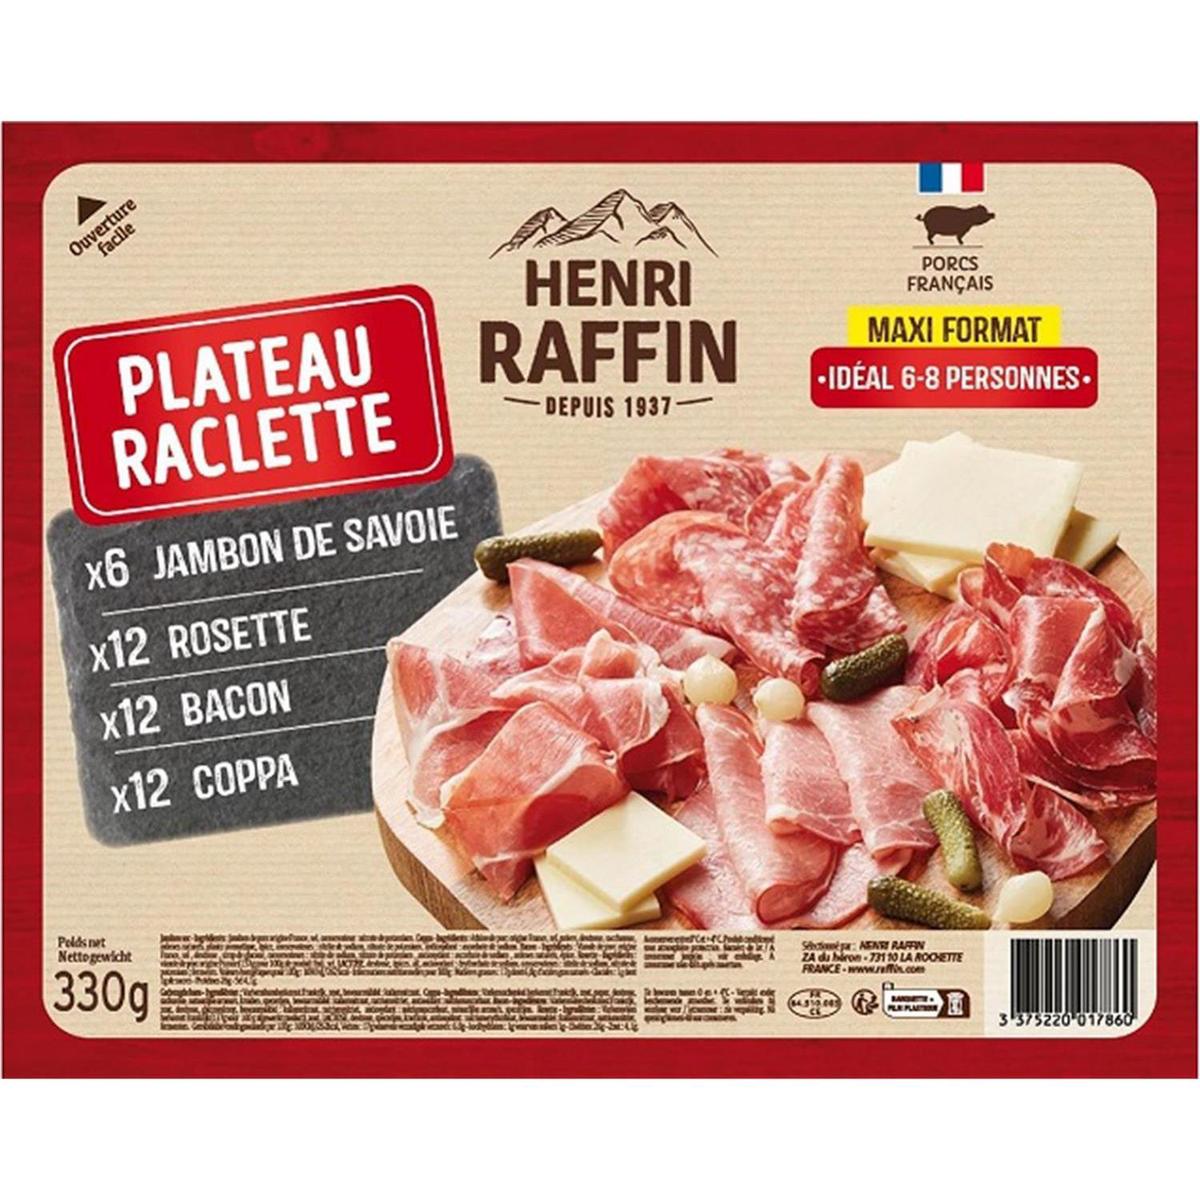 Achat / Vente Henri Raffin Plateau de Charcuterie pour Raclette, 330g